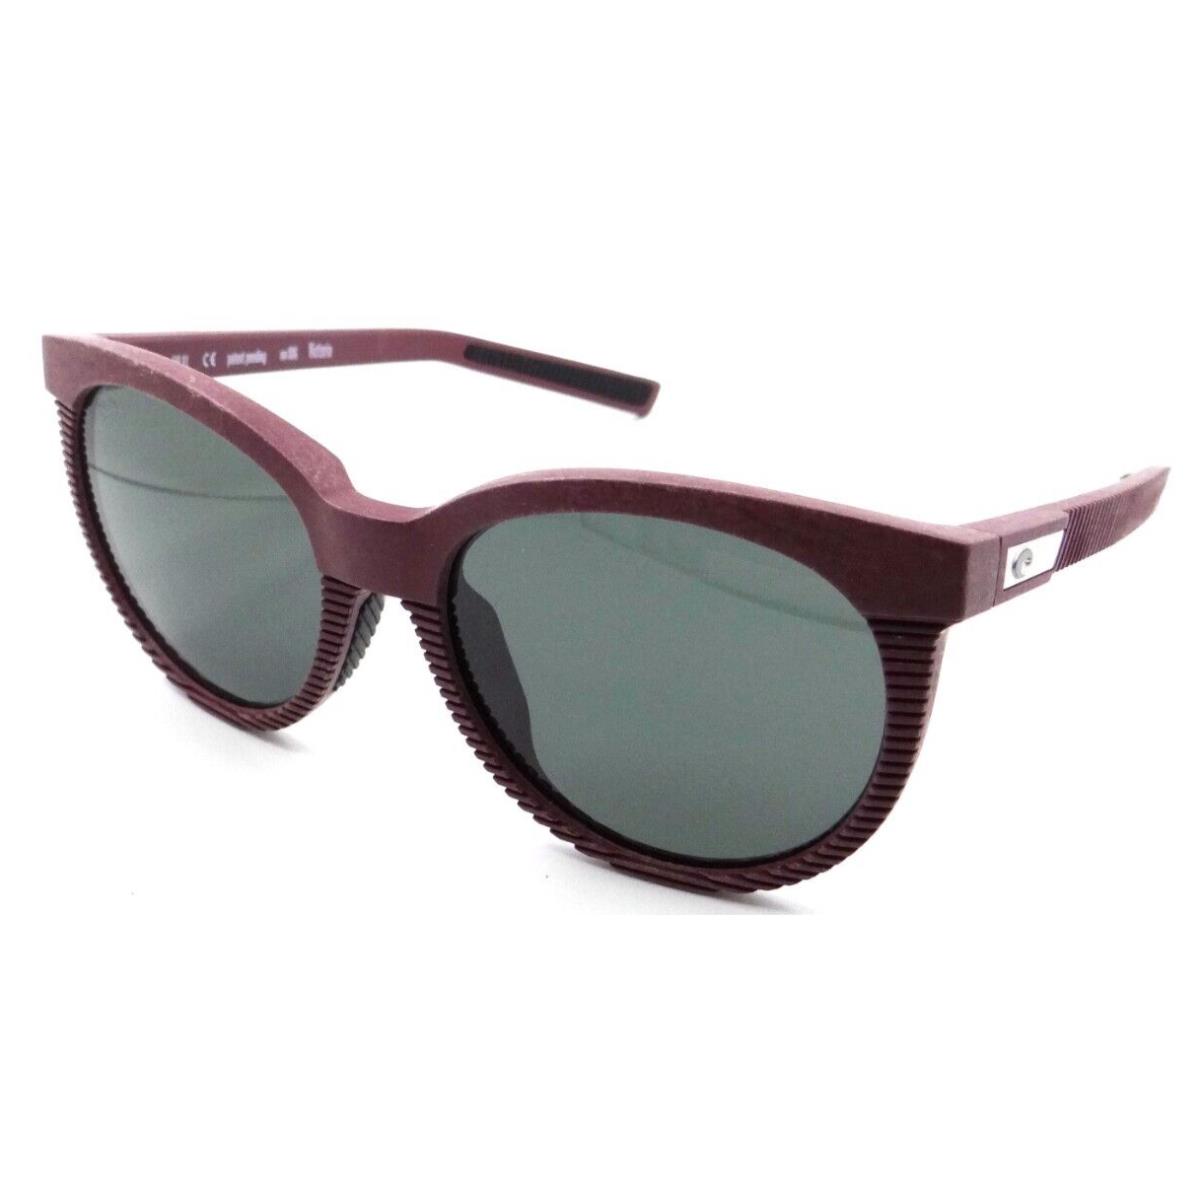 Costa Del Mar Sunglasses Victoria 56-19-135 Net Plum / Gray 580G Glass Polarized